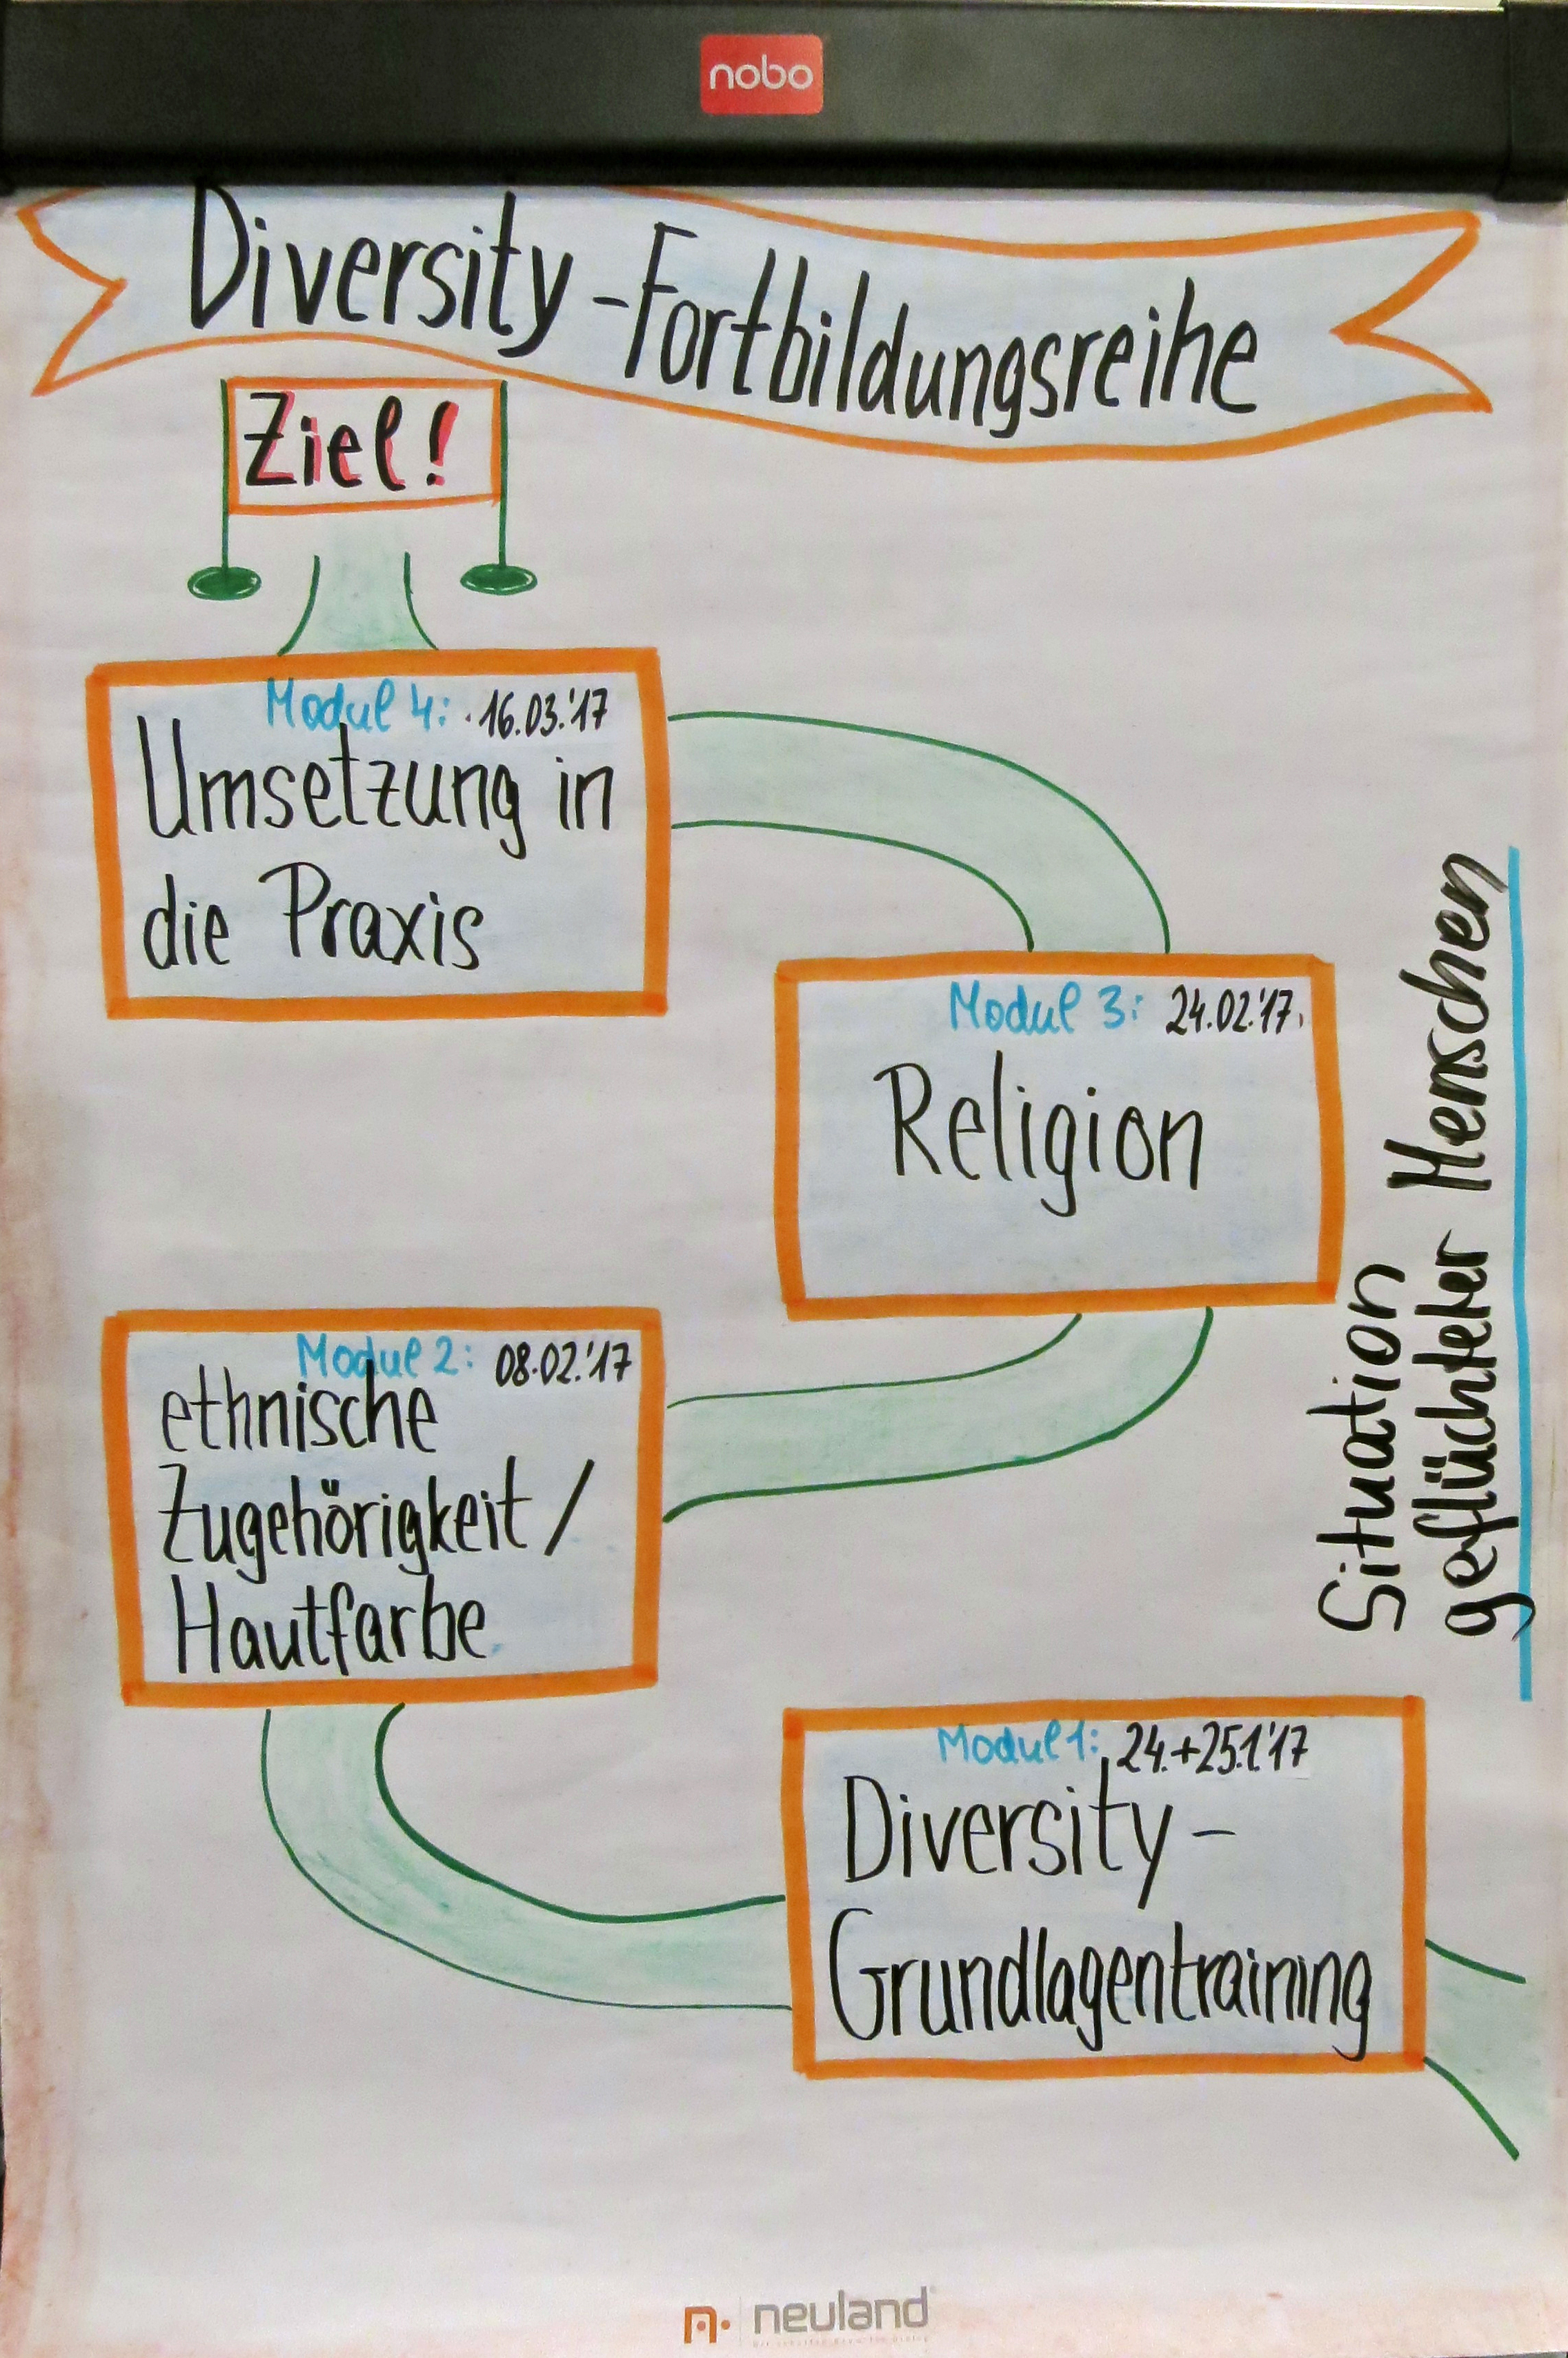 Flipchart, das den Ablaufplan einer Diversity-Fortbildungsreihe zeigt